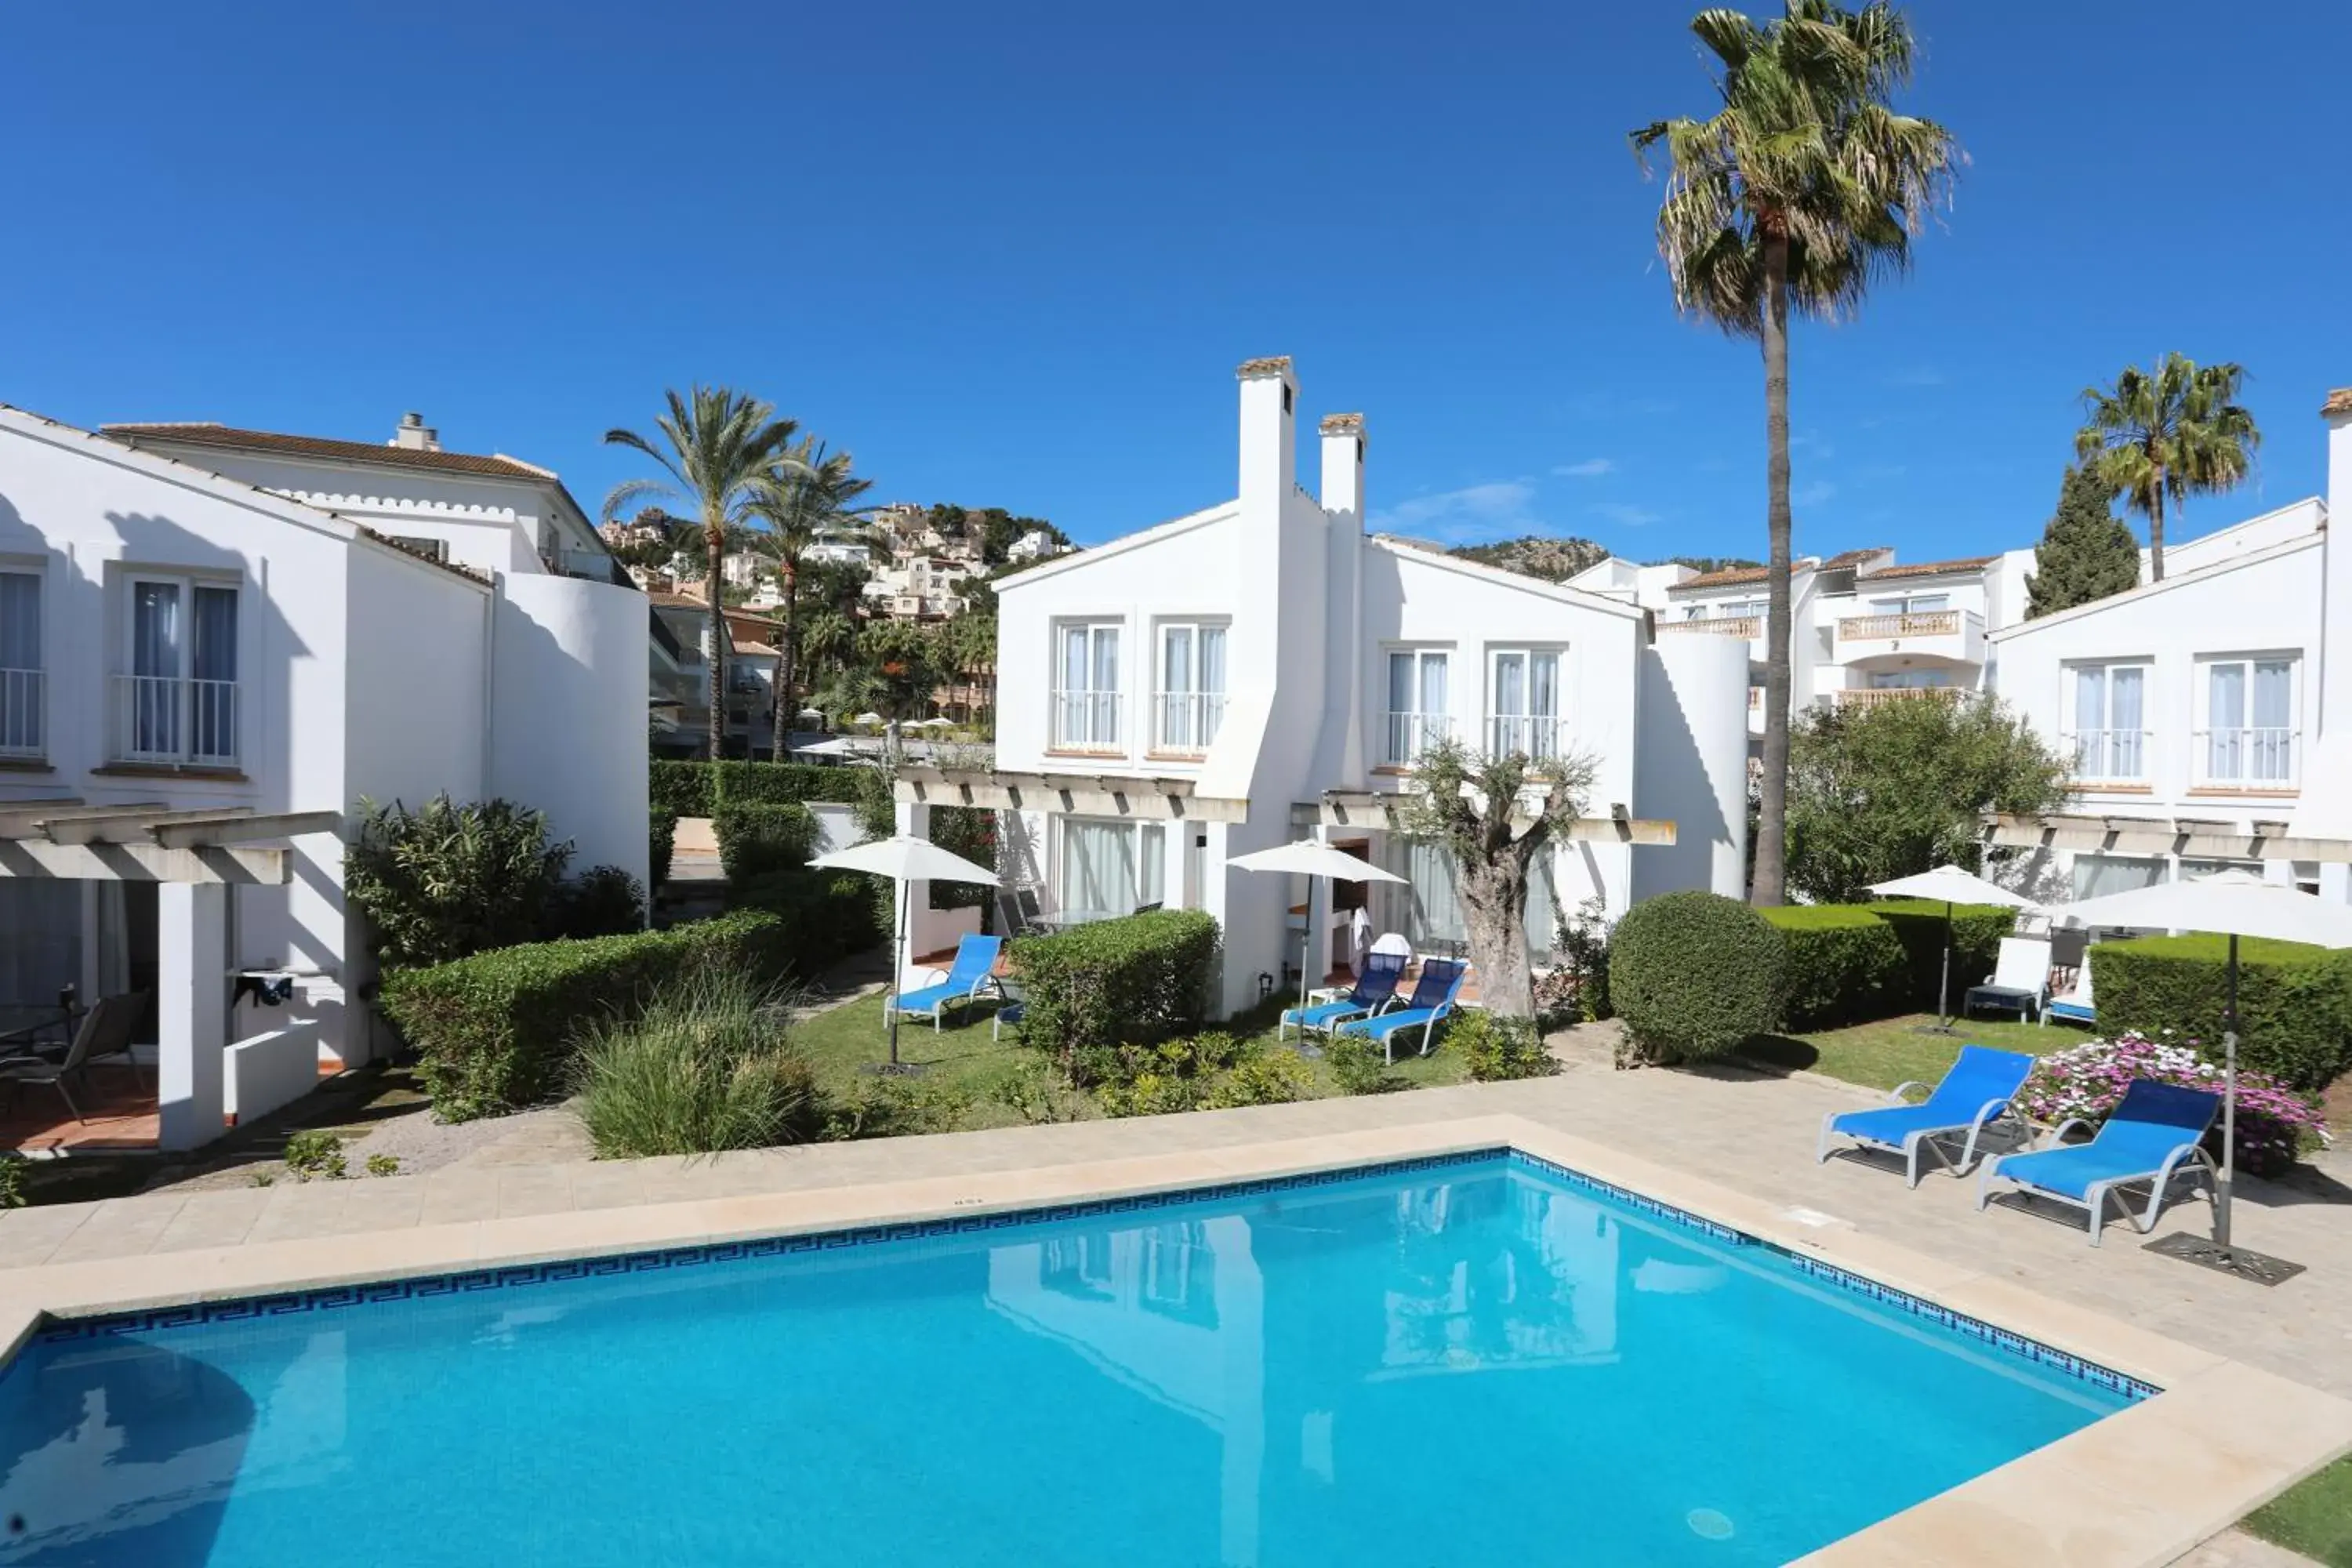 Property building, Swimming Pool in Hotel La Pergola Mallorca